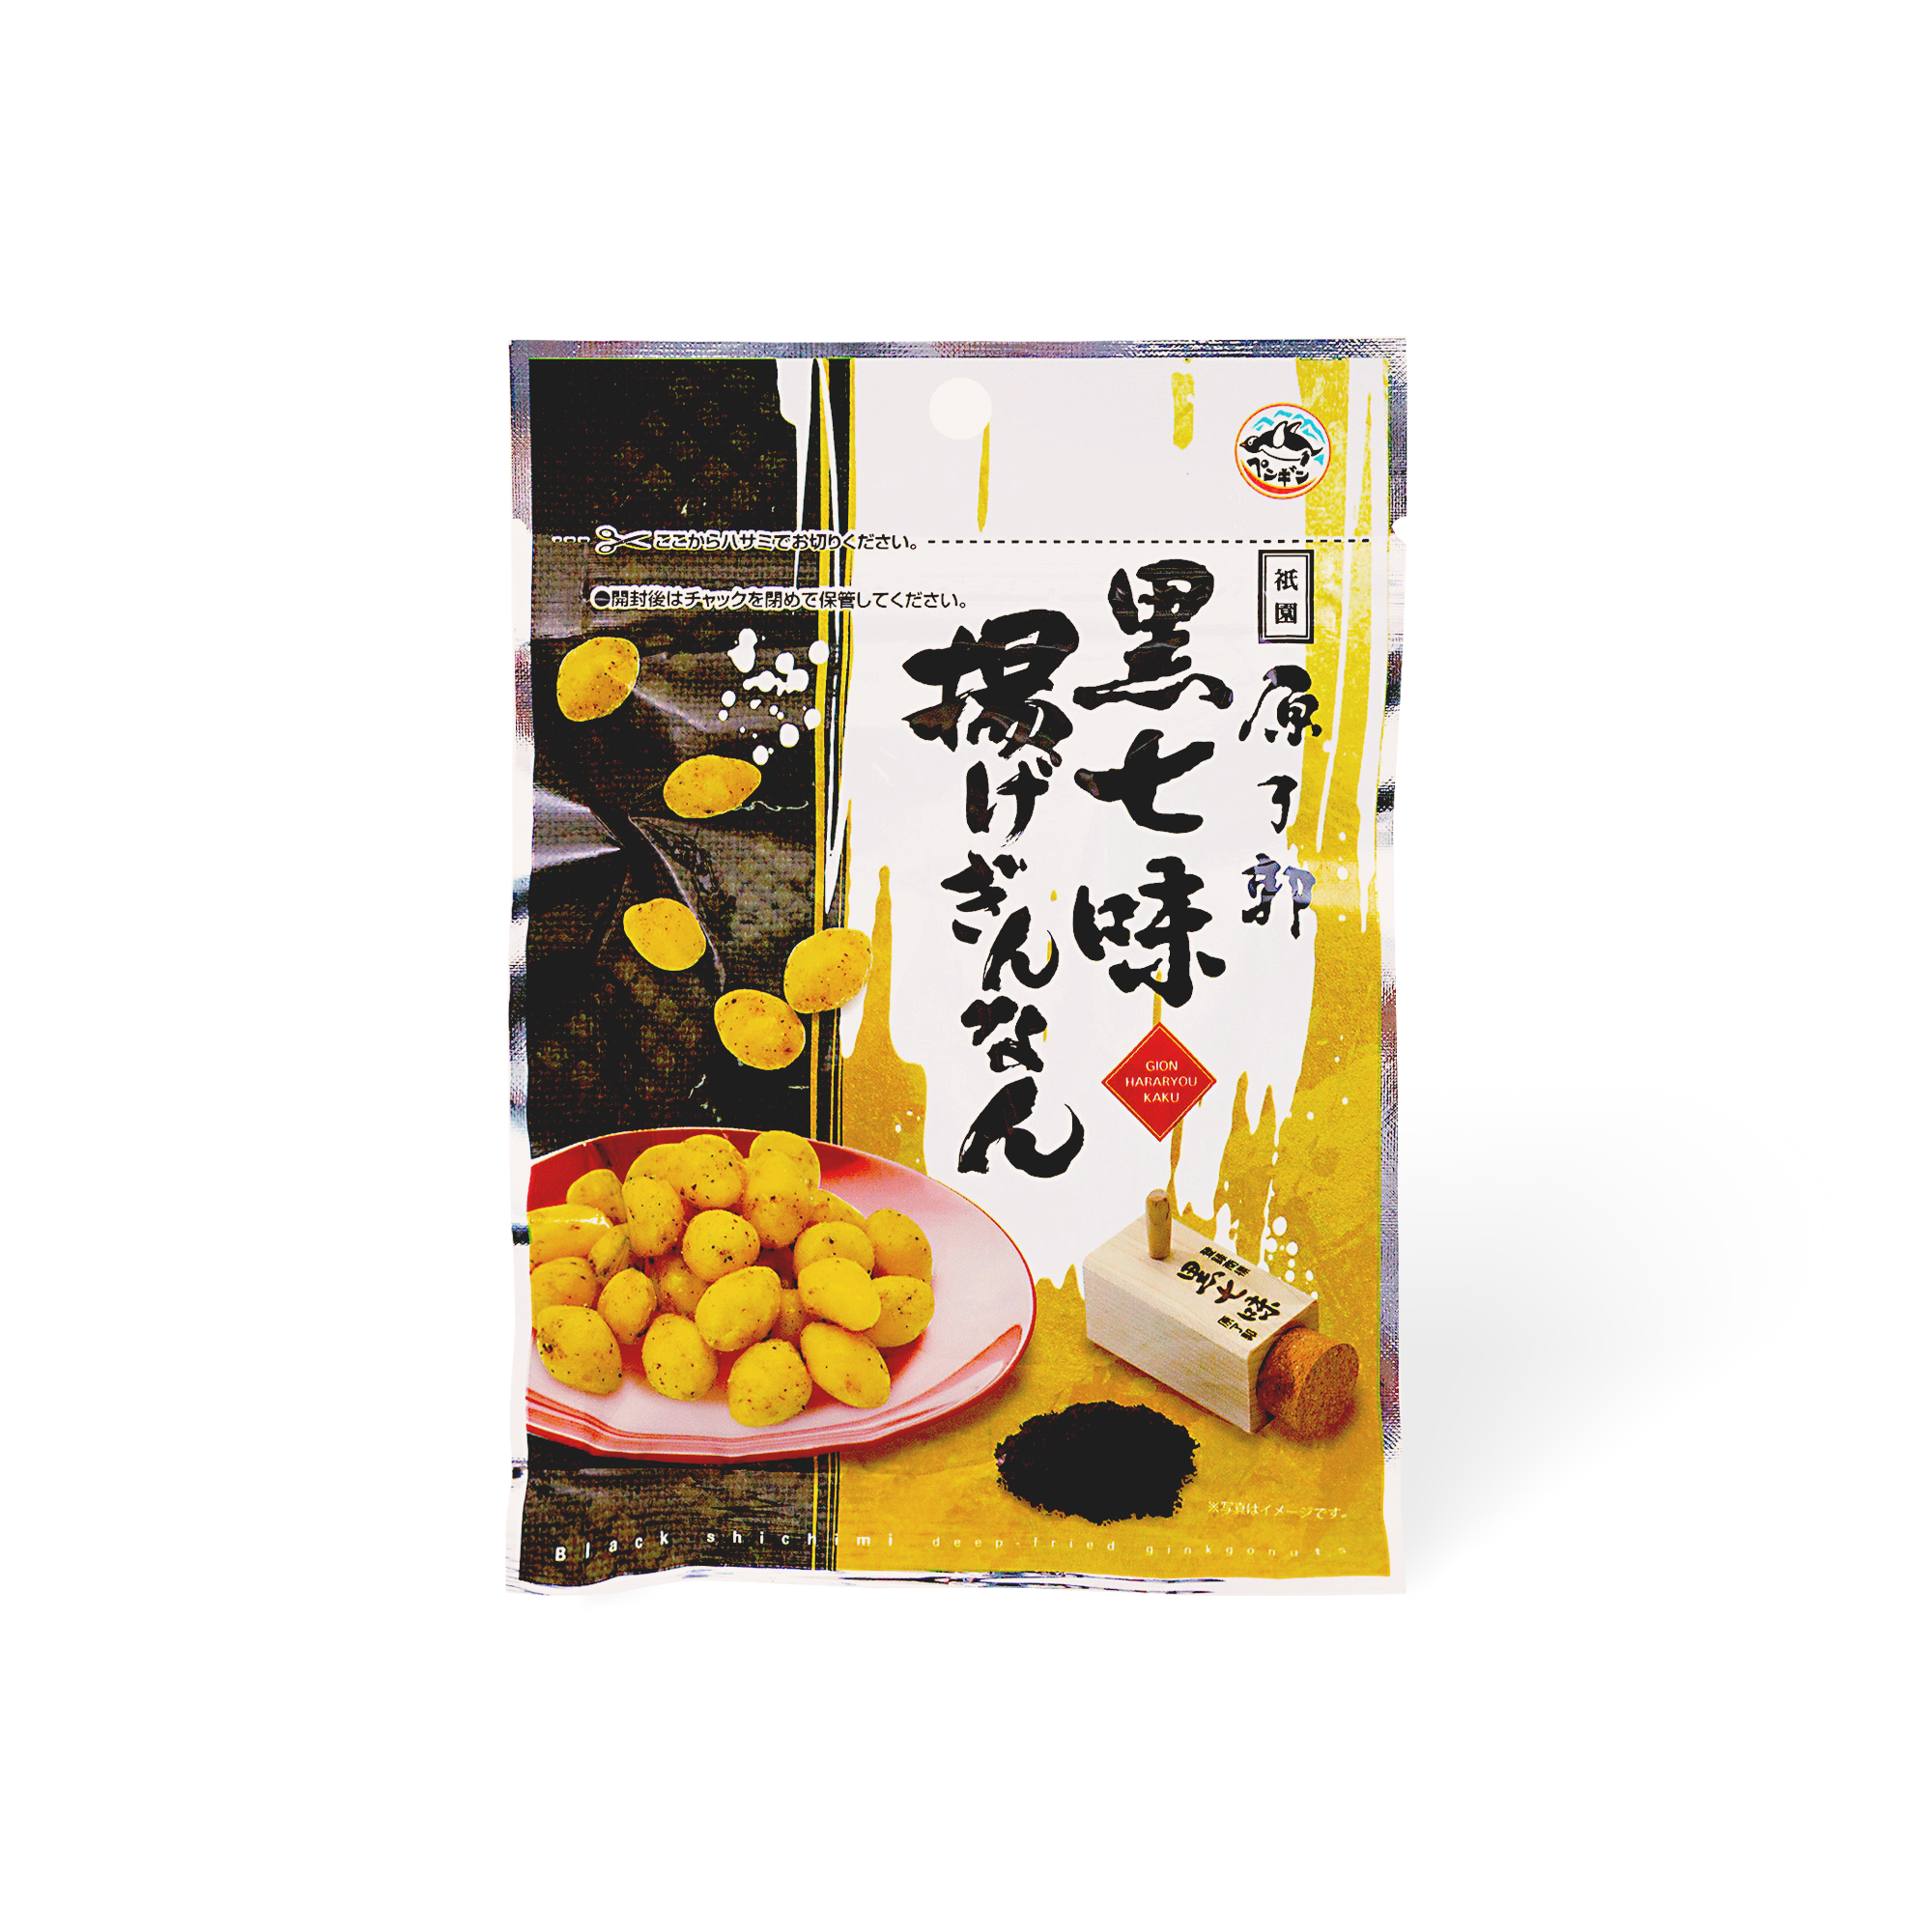 Black Shichimi Fried Ginkgo